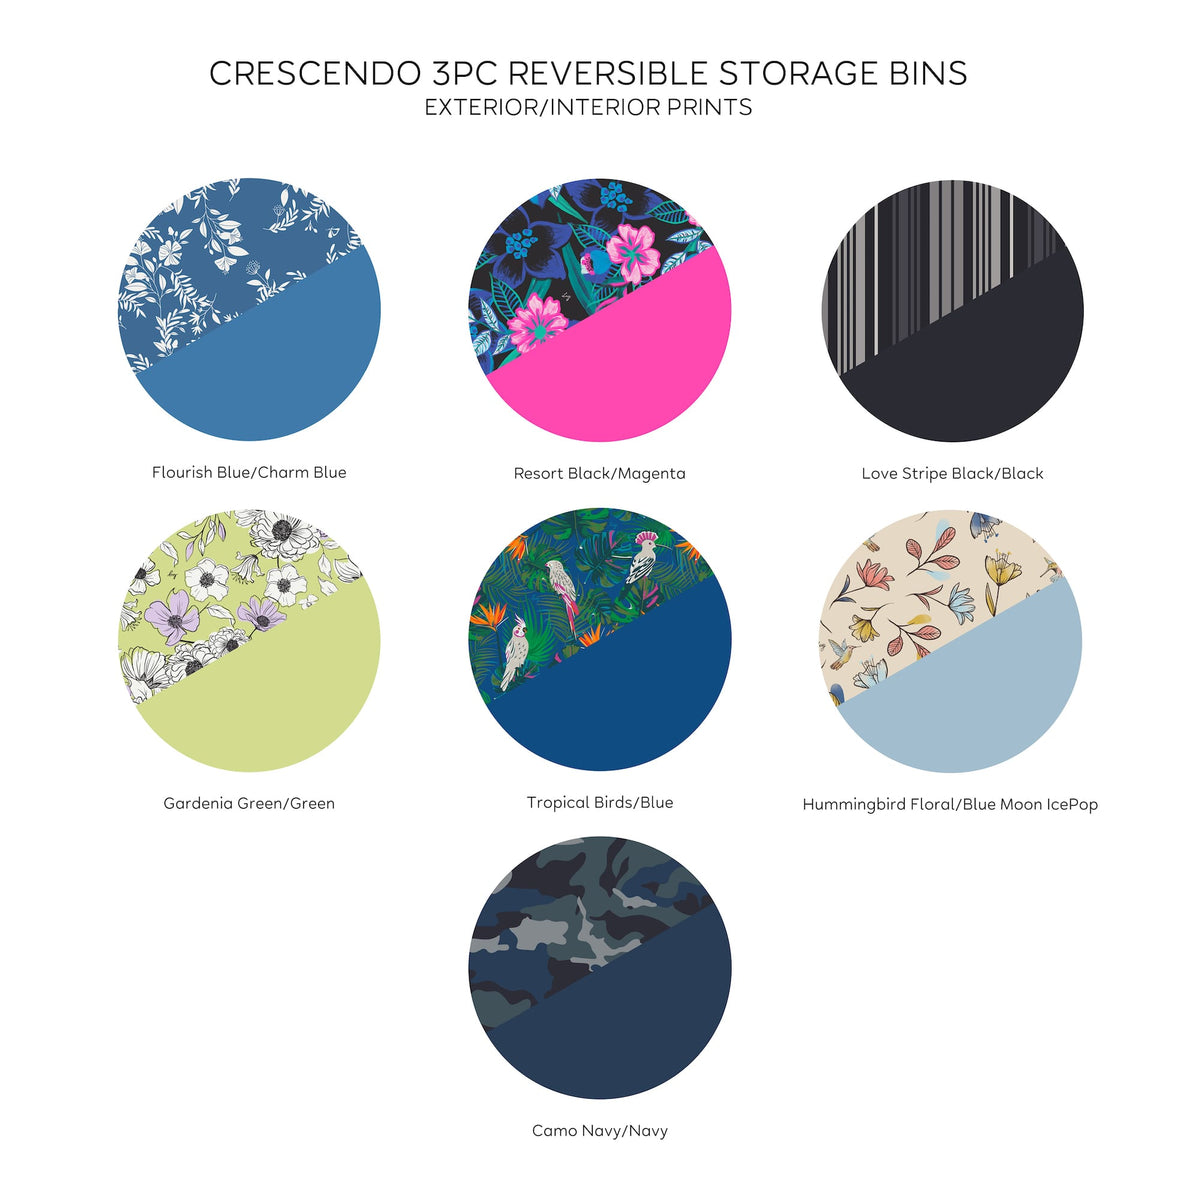 Crescendo 3pc Reversible Storage Bins